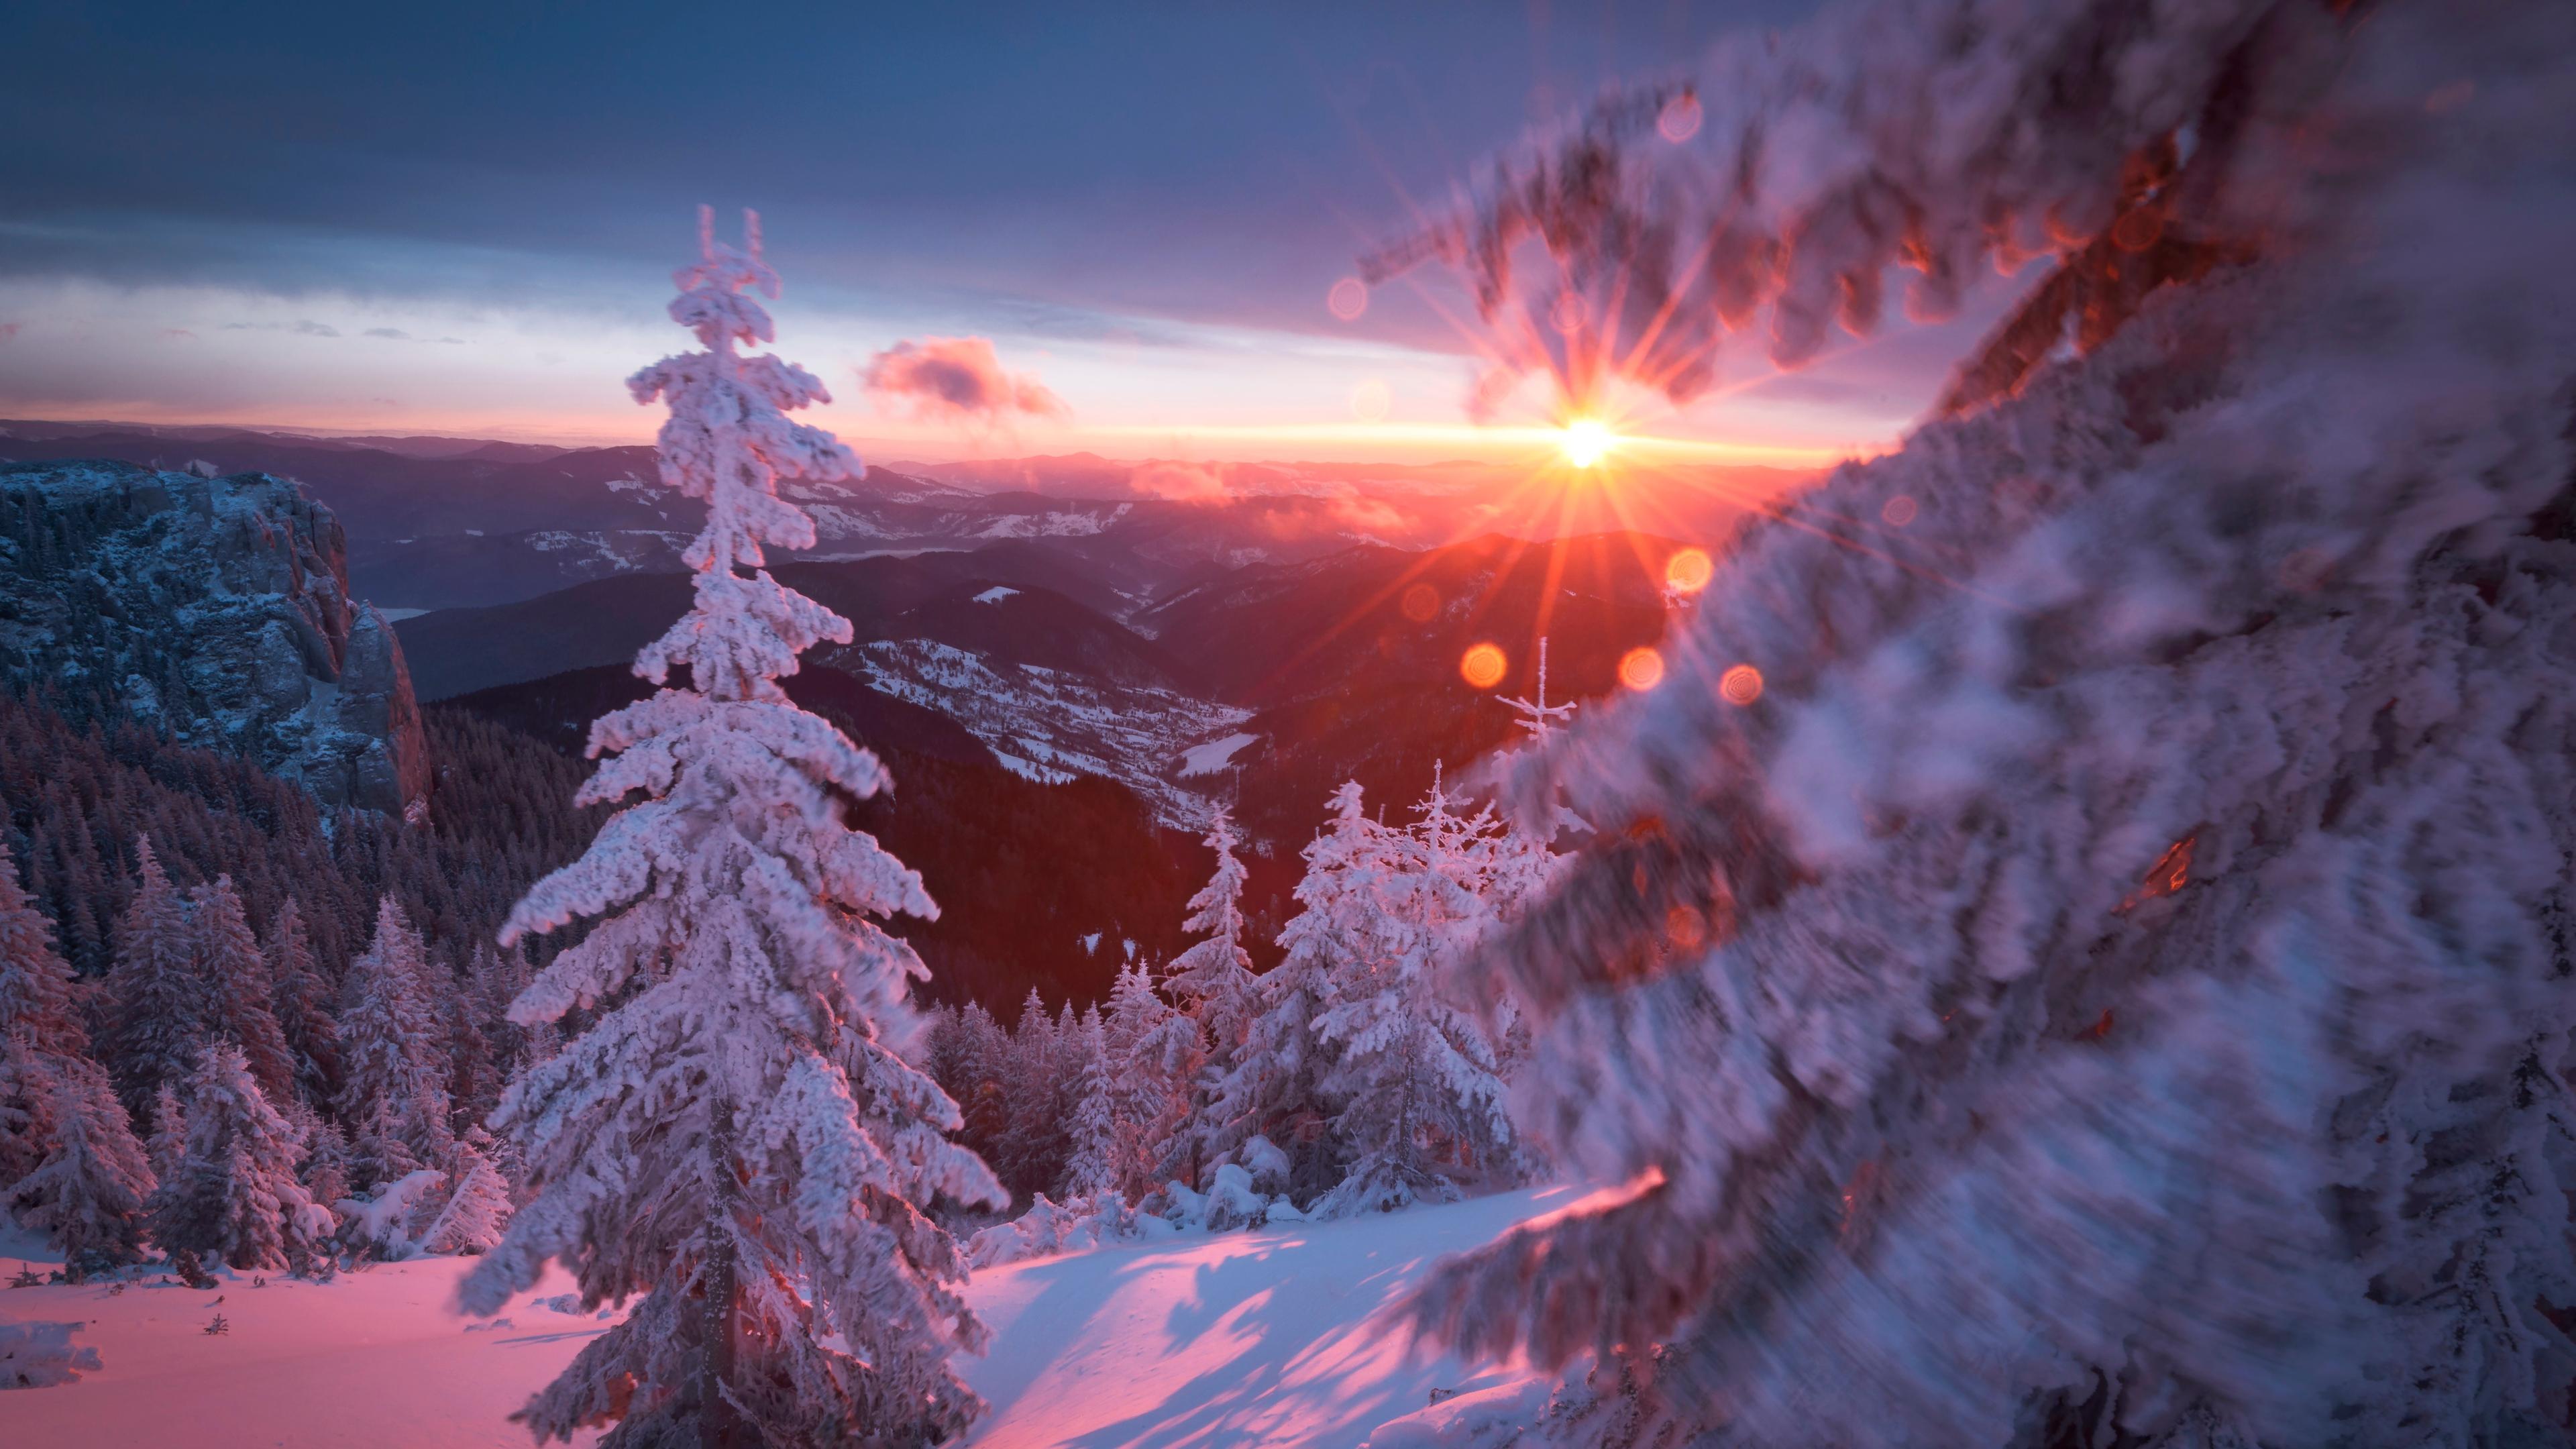  Schneebedeckte Tannen vor untergehender Sonne in einer winterlichen Mittelgebirgslandschaft.